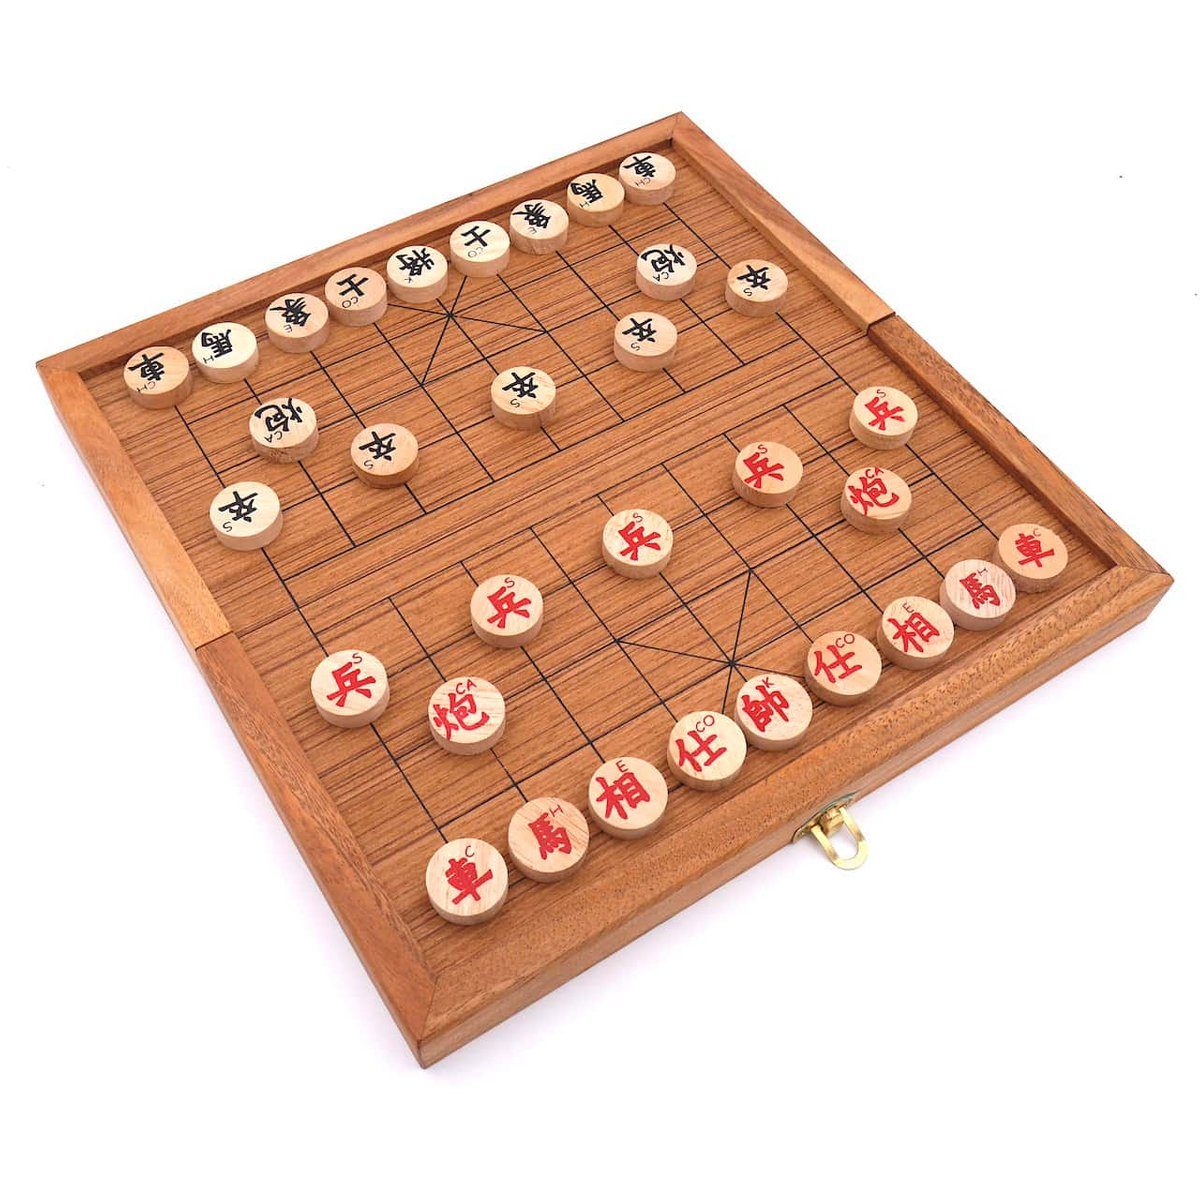 ROMBOL Denkspiele chinesisches originalen Schachspiel, Holzscheiben, mit Xiangqi - Spiel, Set Strategiespiel Holzspiel